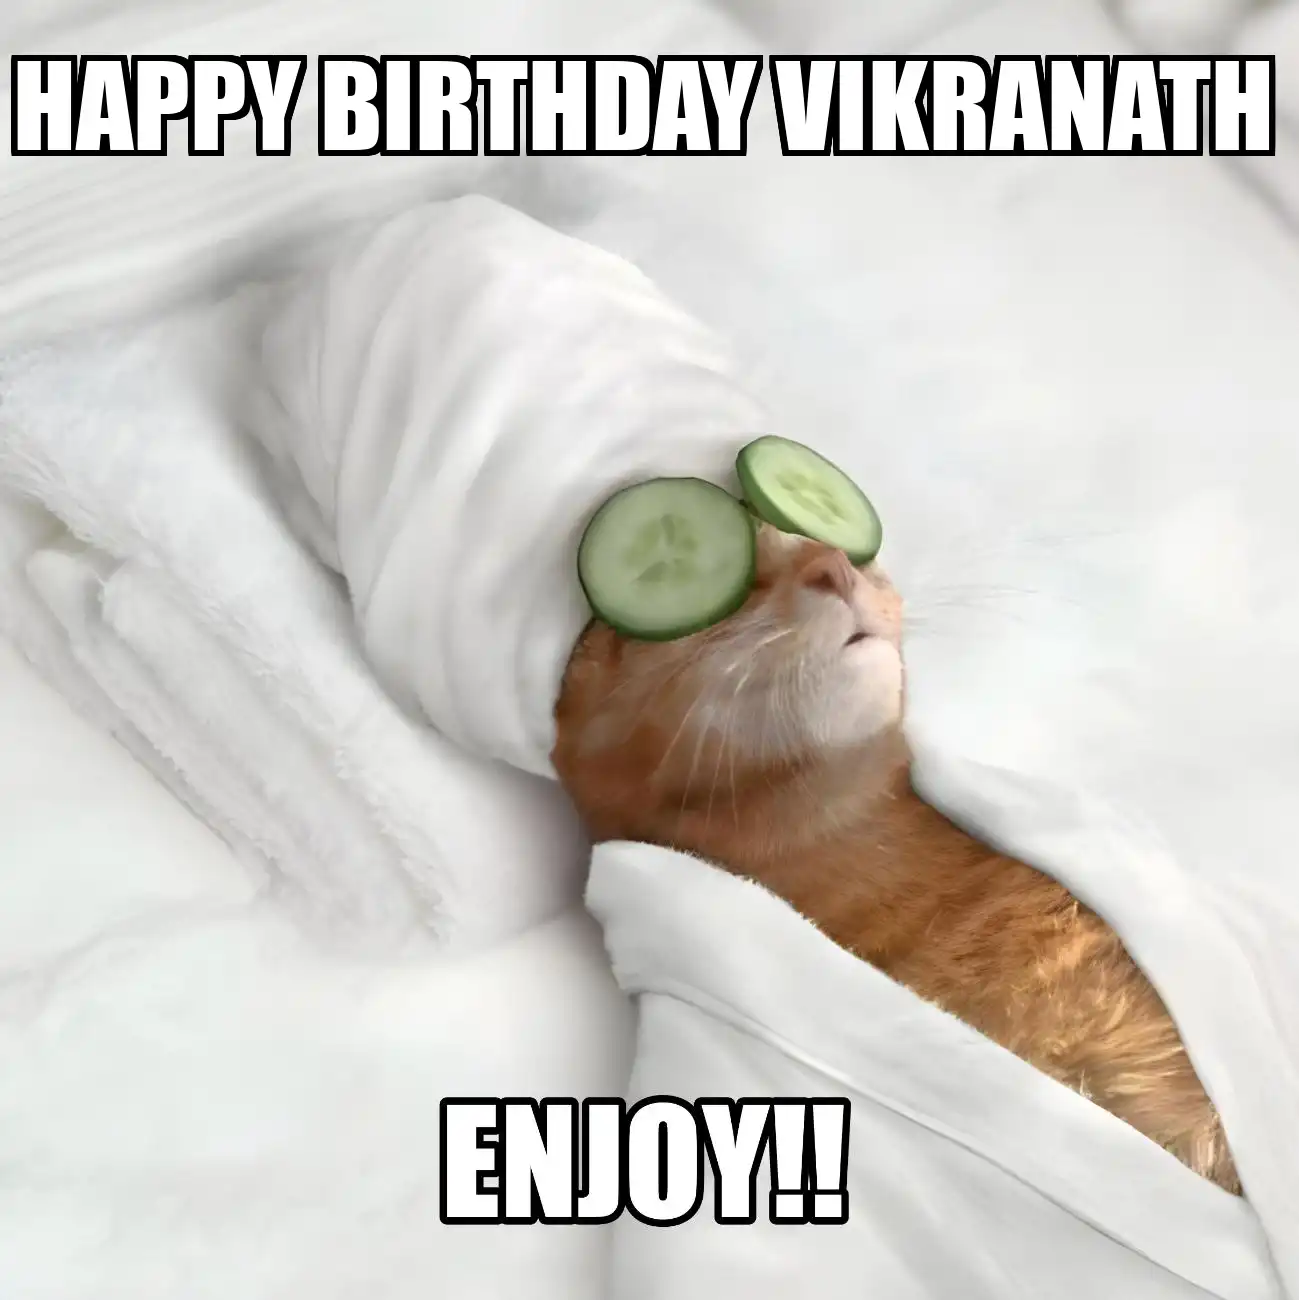 Happy Birthday Vikranath Enjoy Cat Meme